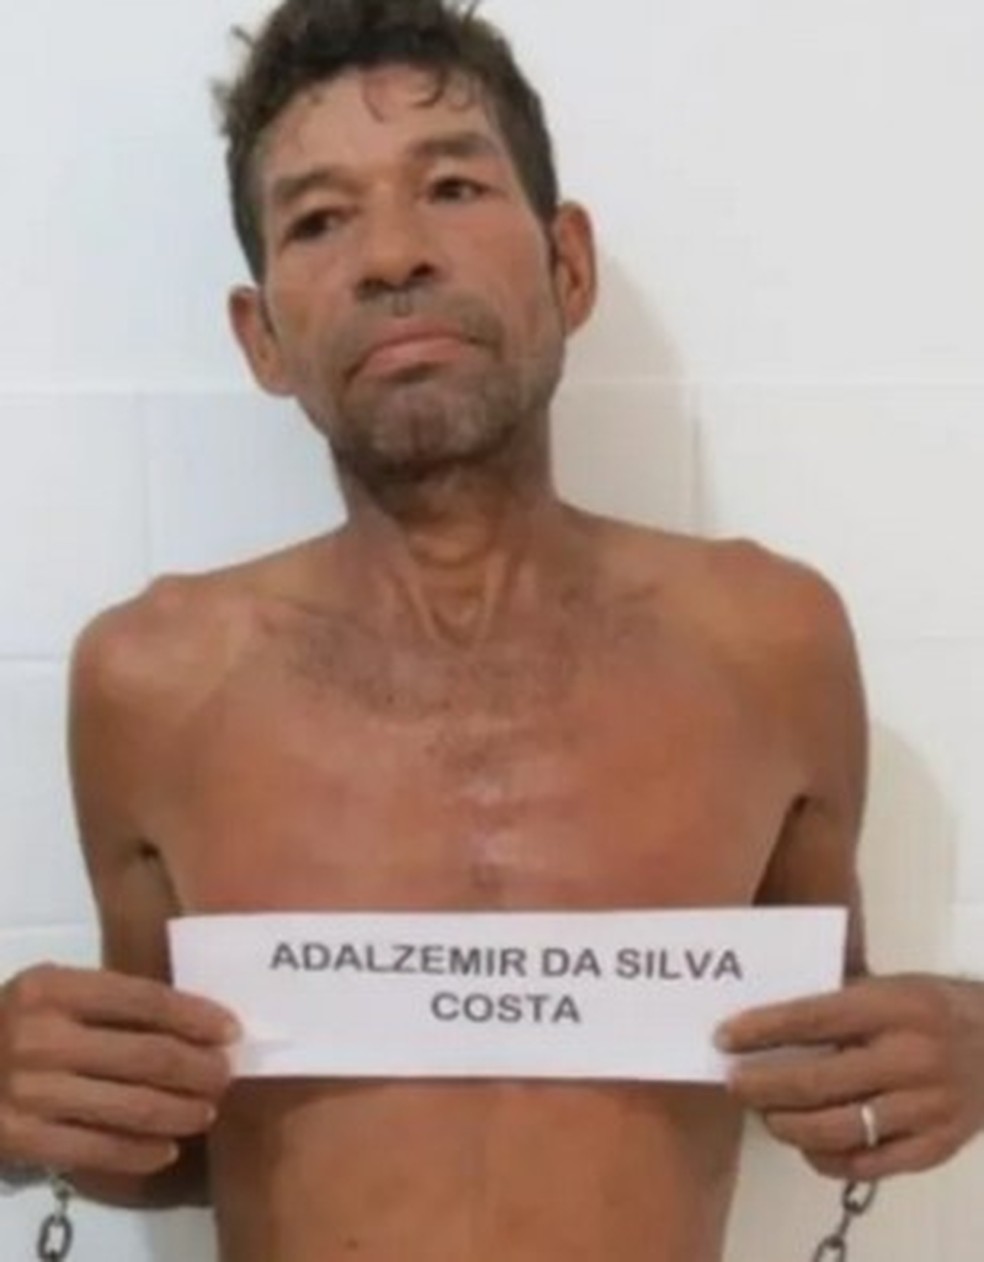  Adalzemir Costa após ser preso em Rio Branco suspeito de ter cometido um estupro no MT — Foto: Arquivo